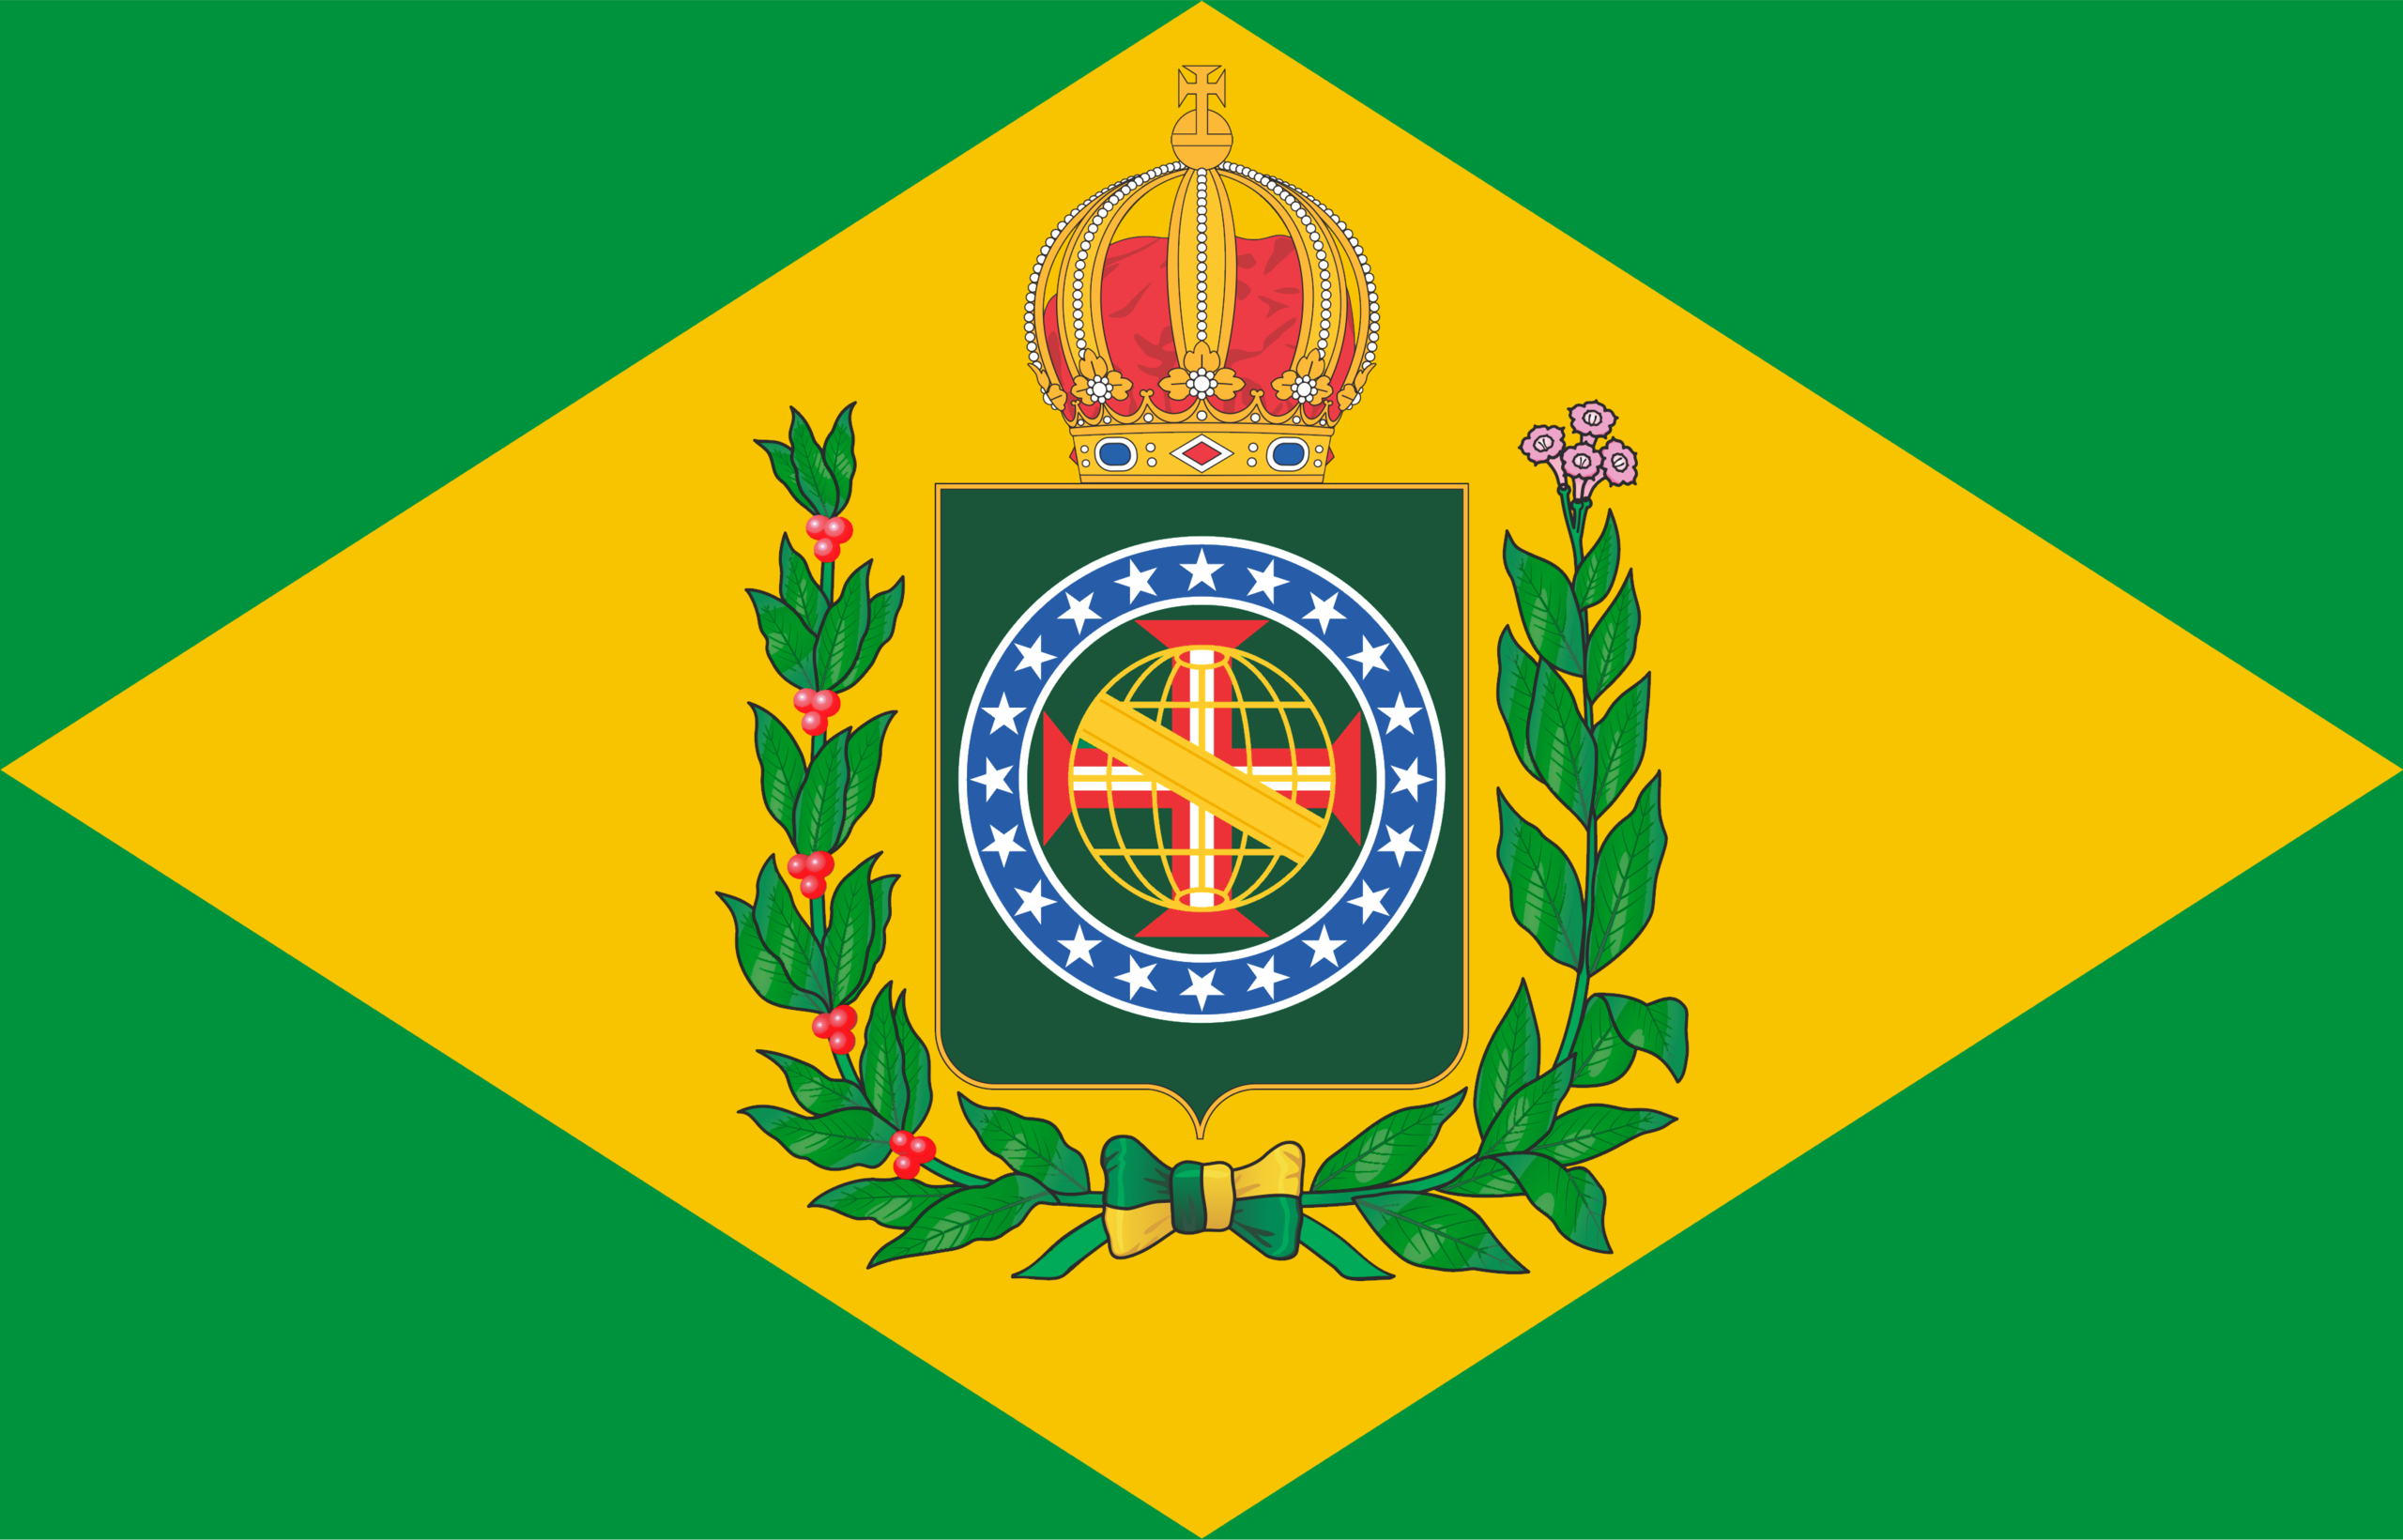 Fayl:Bandeira do Império do Brasil com nó e cores corretos.png - Vikipediya